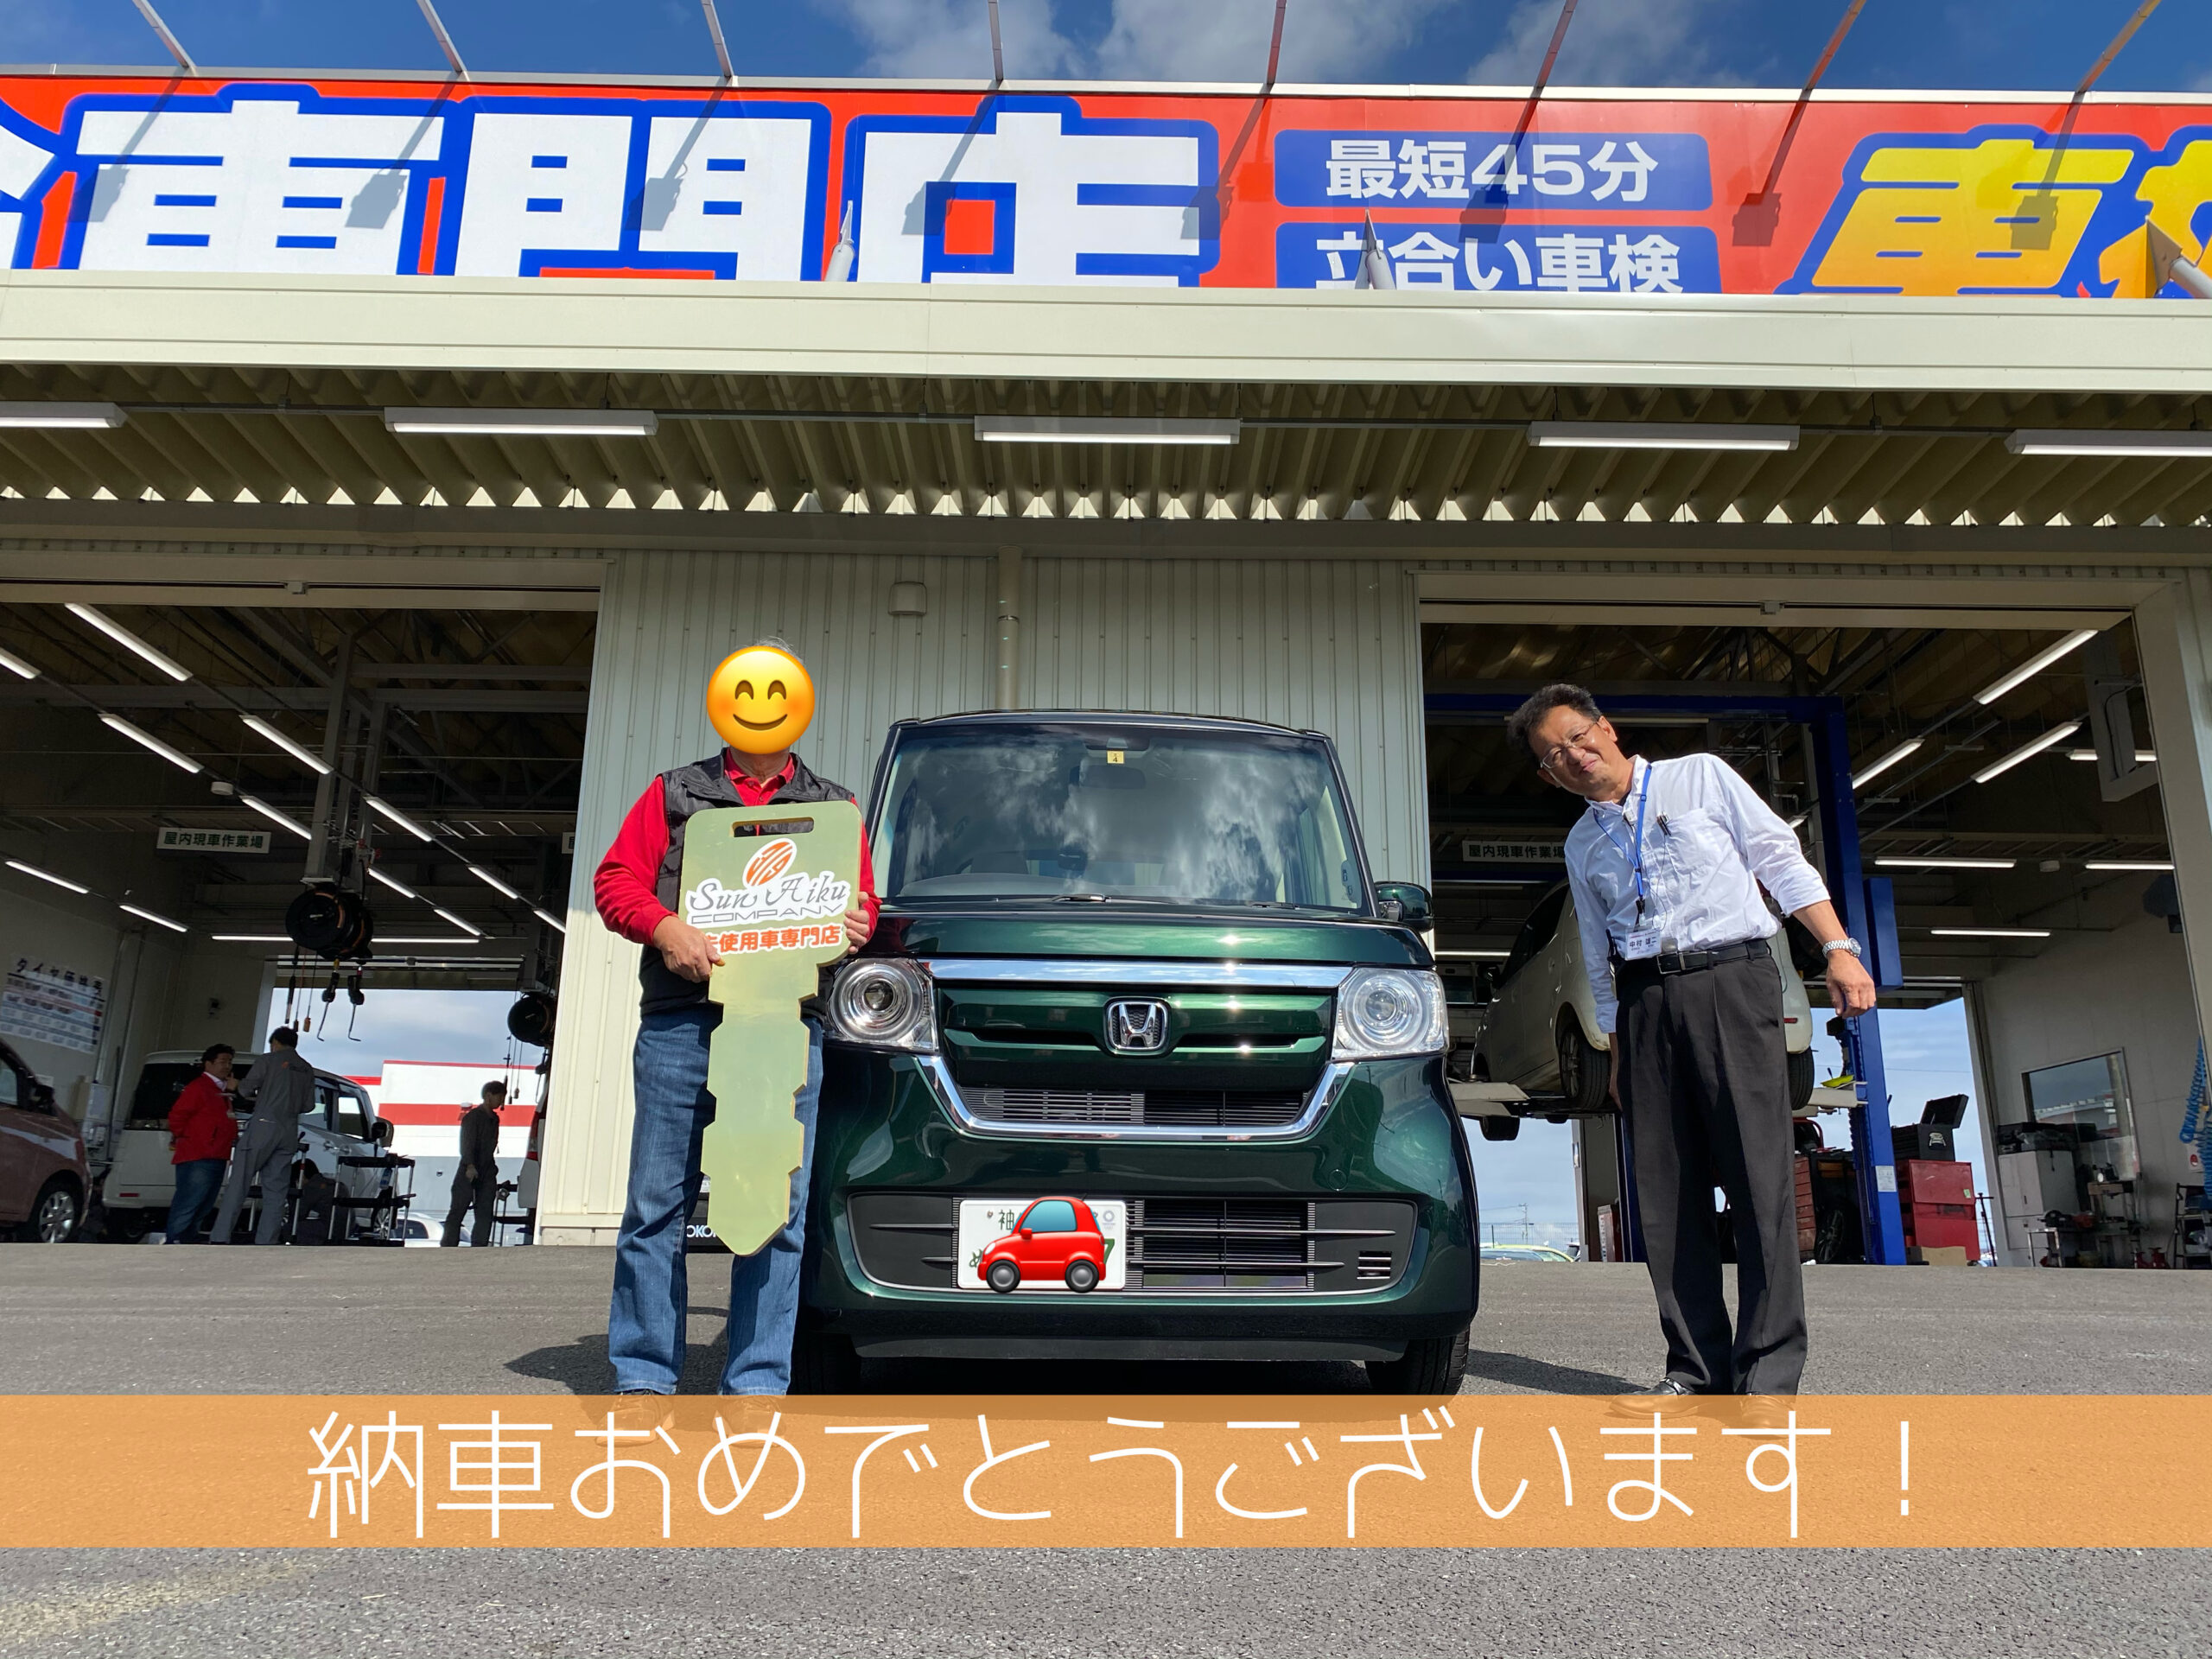 車販の車種カテゴリー ホンダ 千葉 茂原で未使用 軽自動車 プリウスの販売 車検ならサンアイク